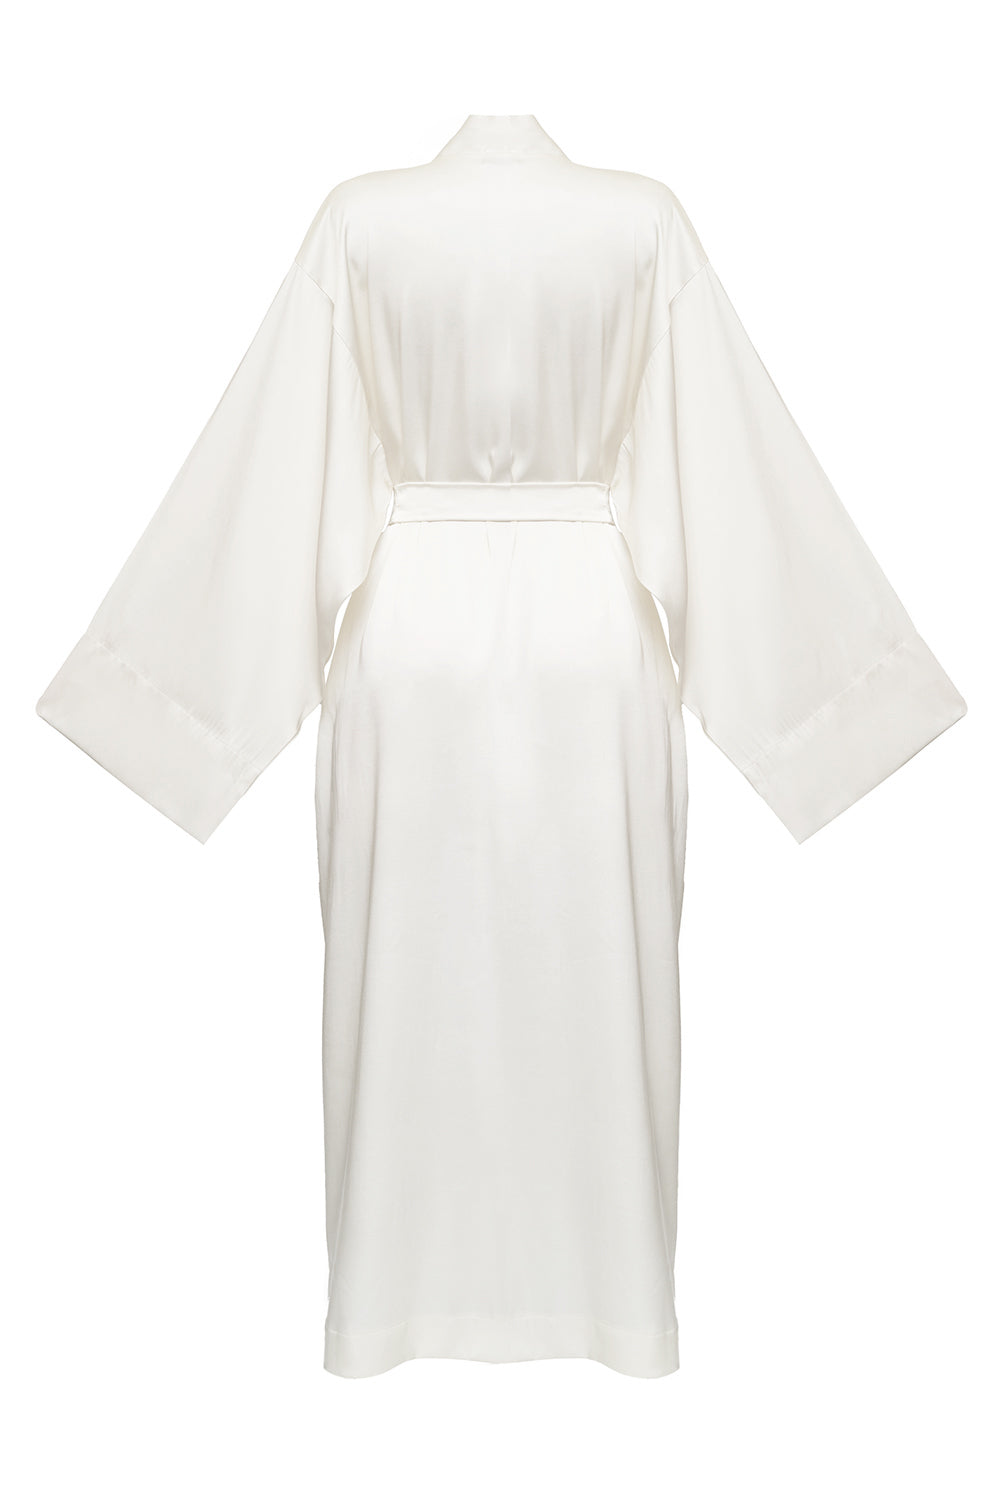 Kasumi white kimono robe